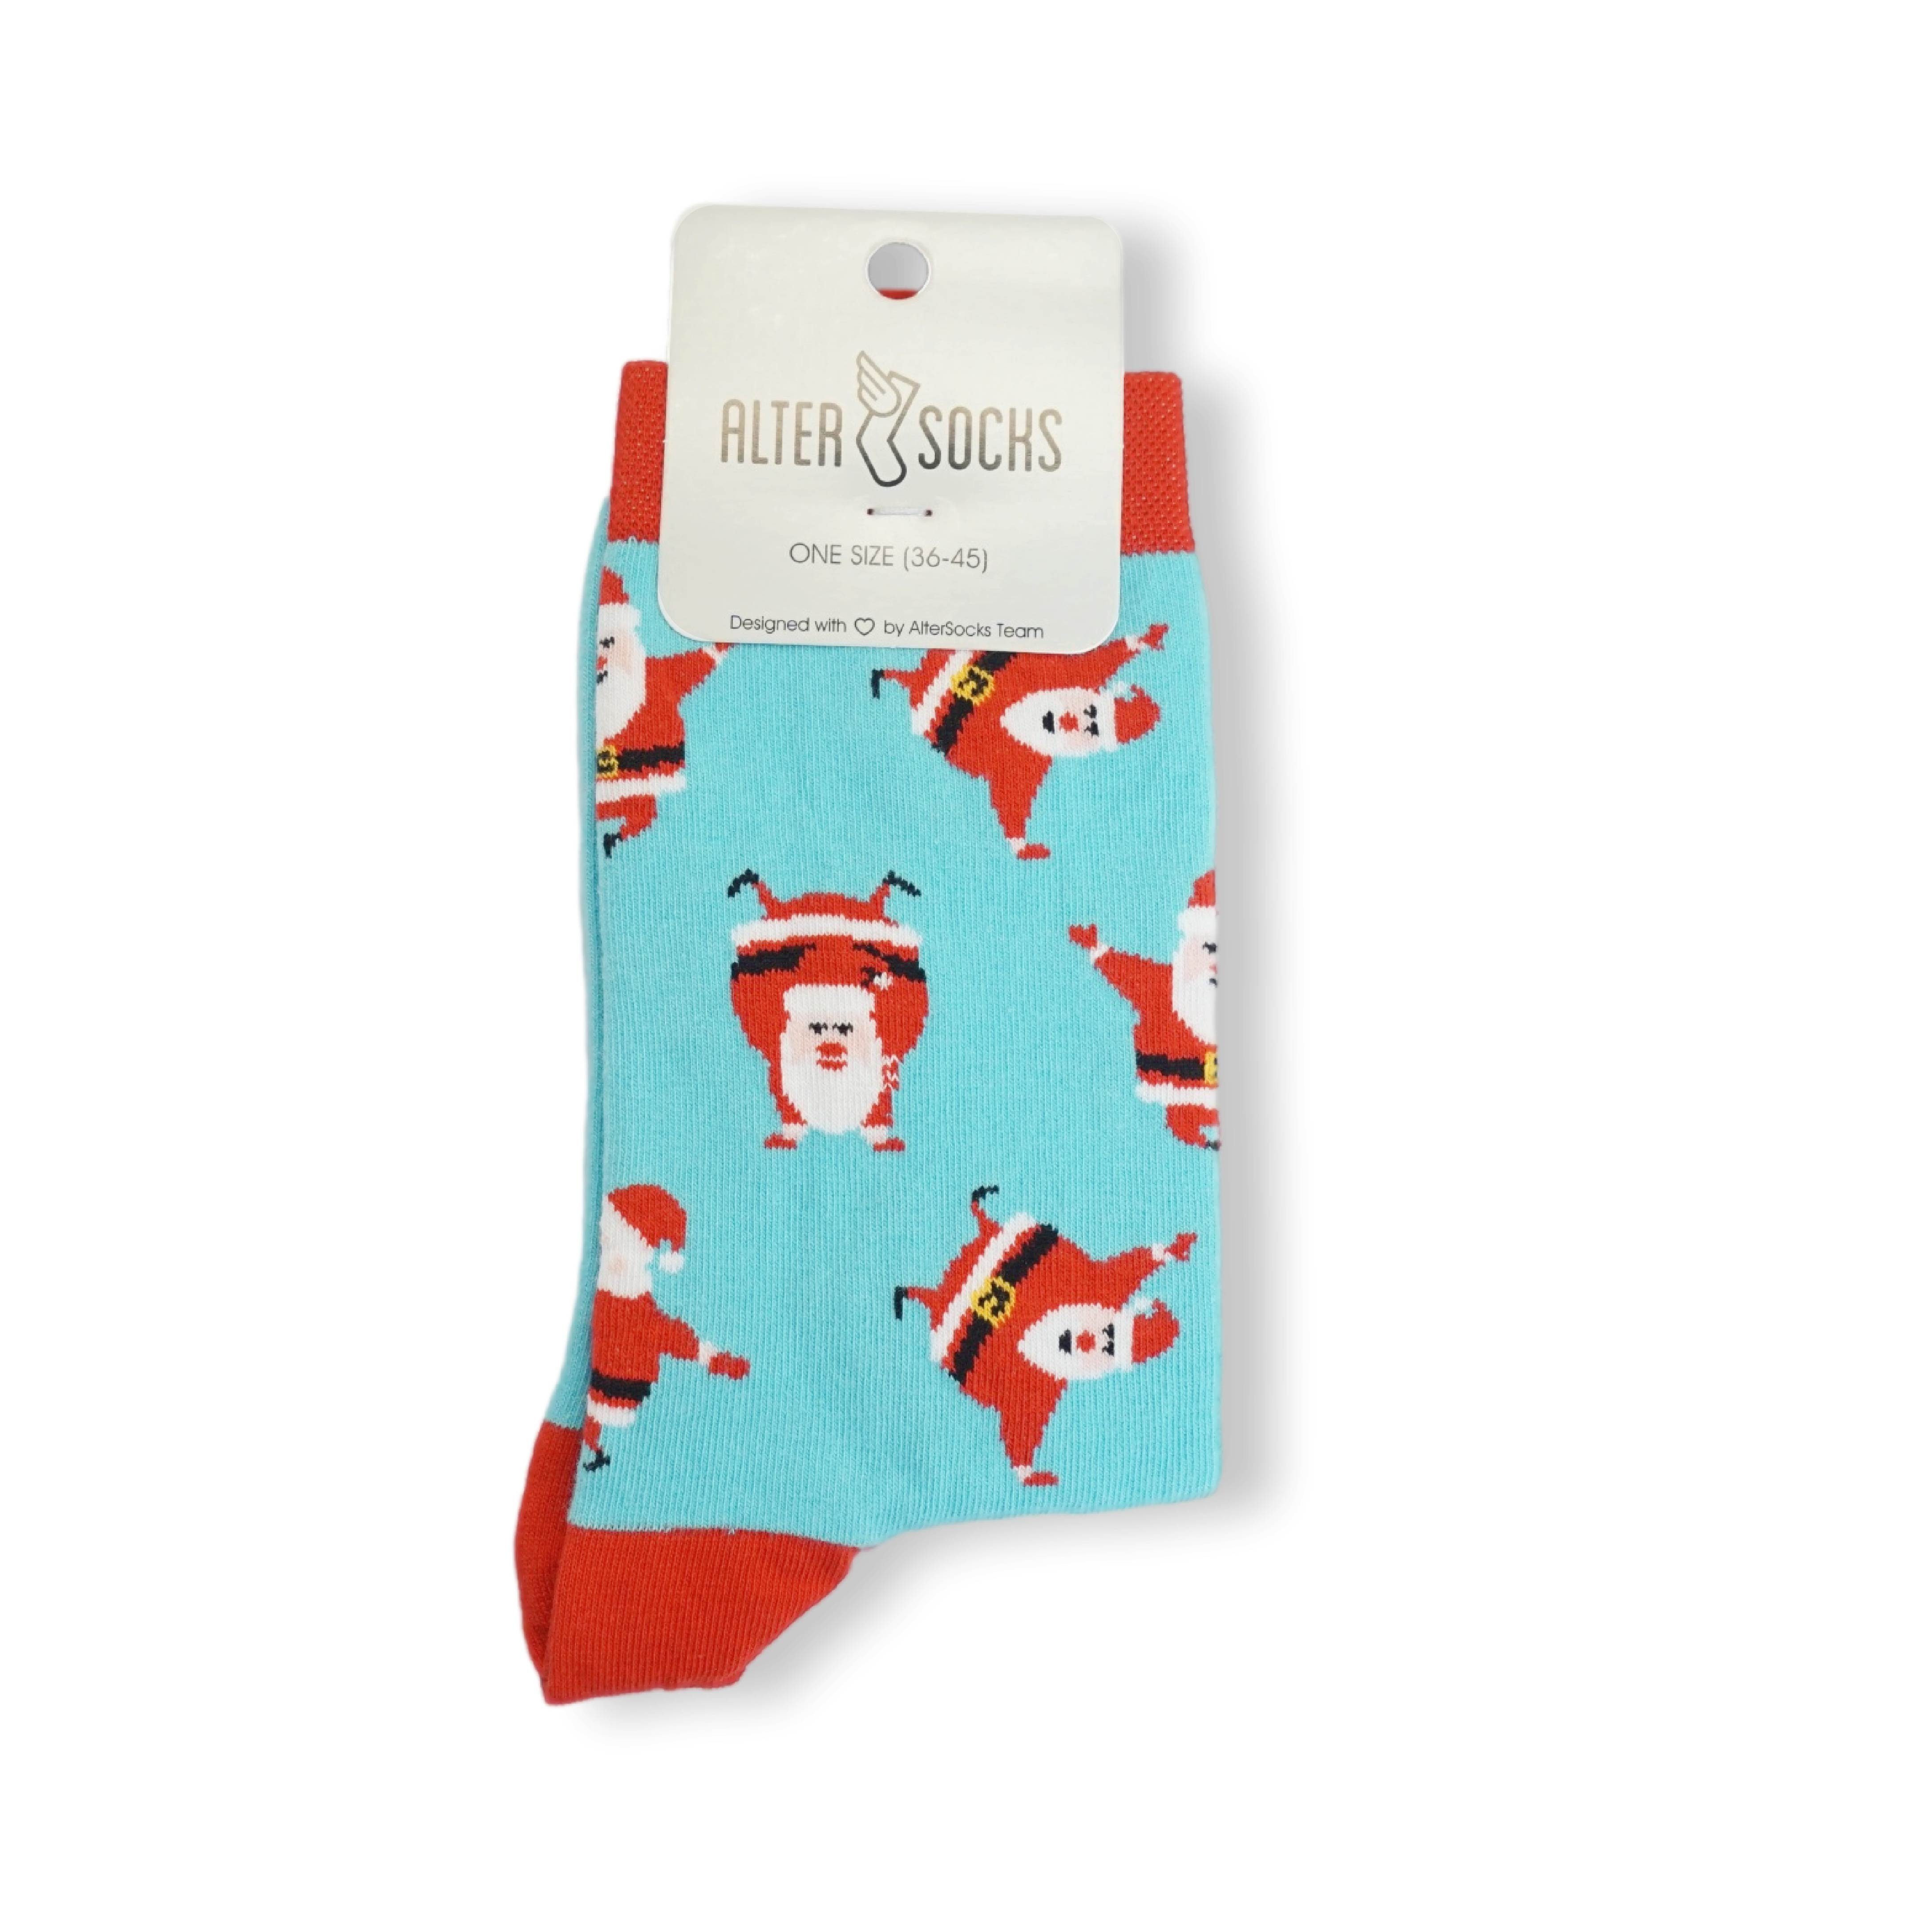 Socken Weihnachtssocken (3 Damen Herren Einheitsgröße Freizeitsocken und Paar) TwoSocks Santa lustige